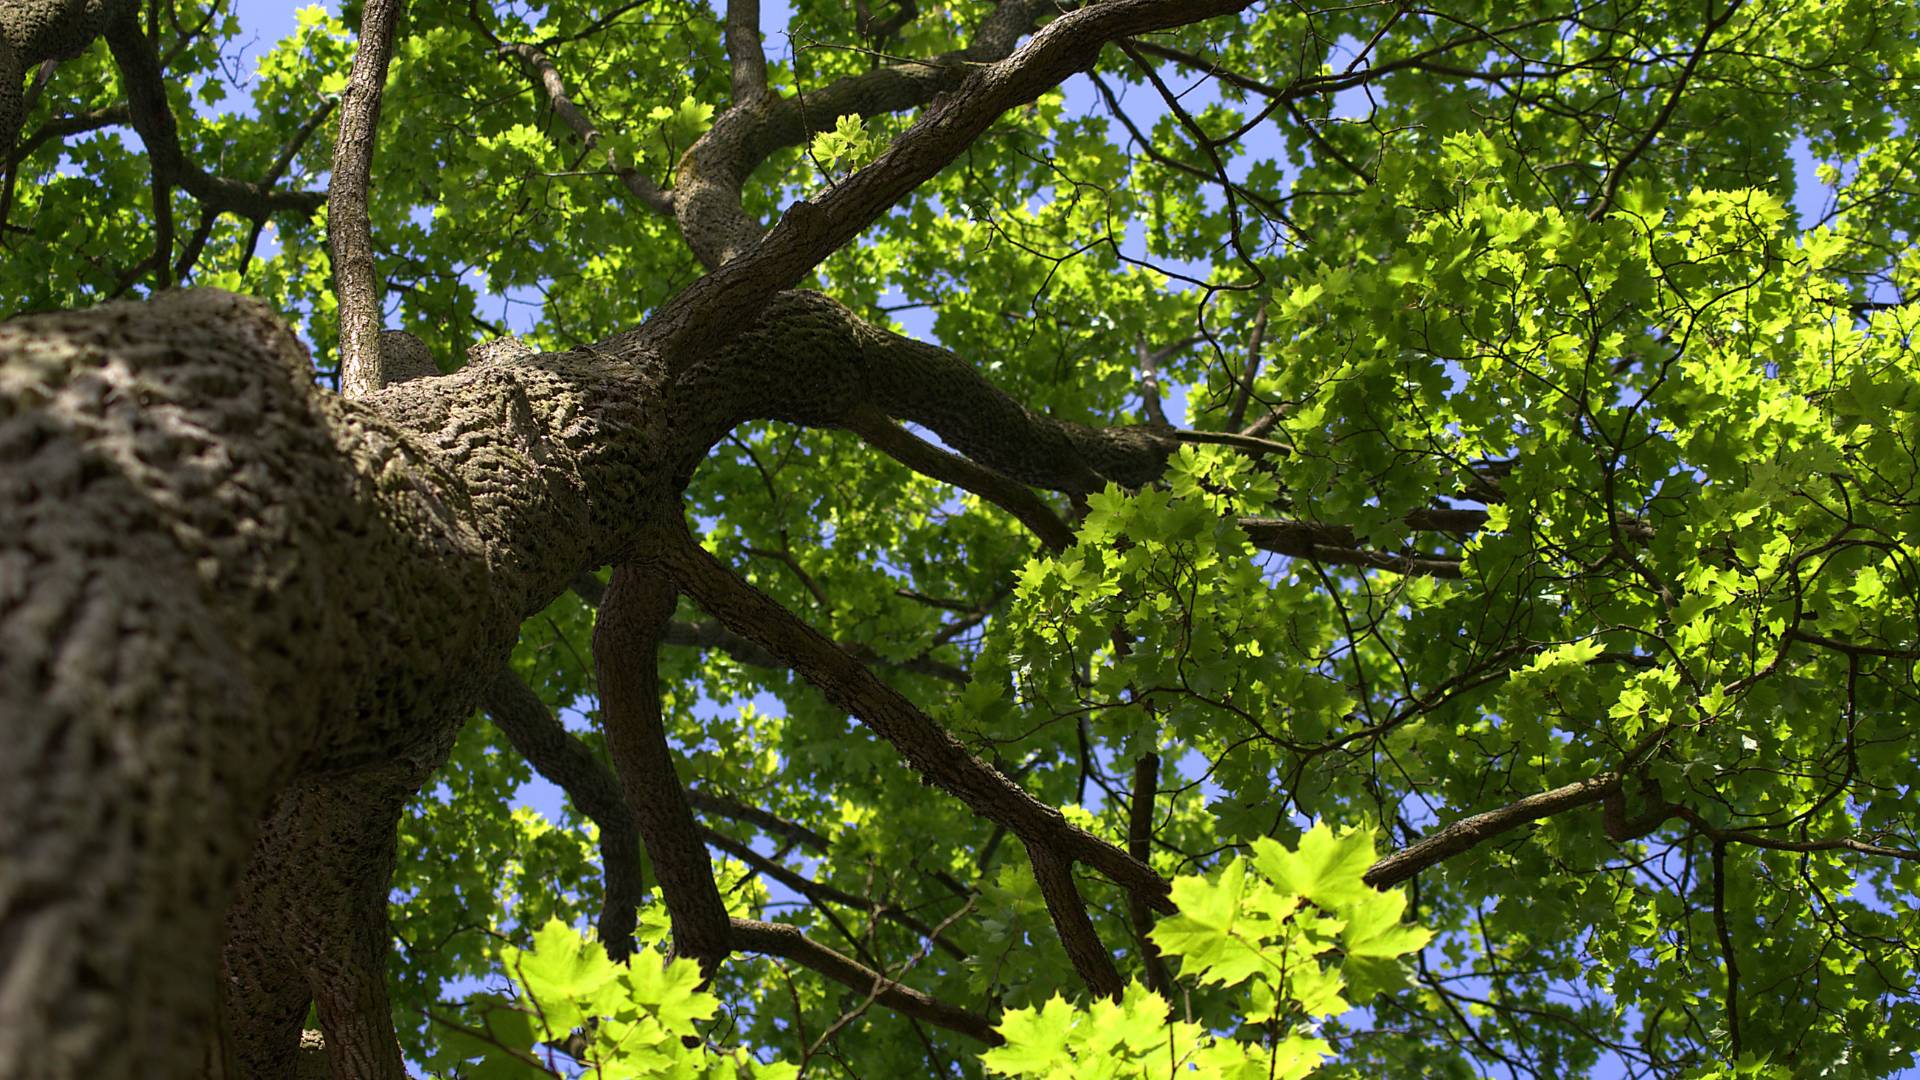 A canopy of an oak tree in Massachusetts.